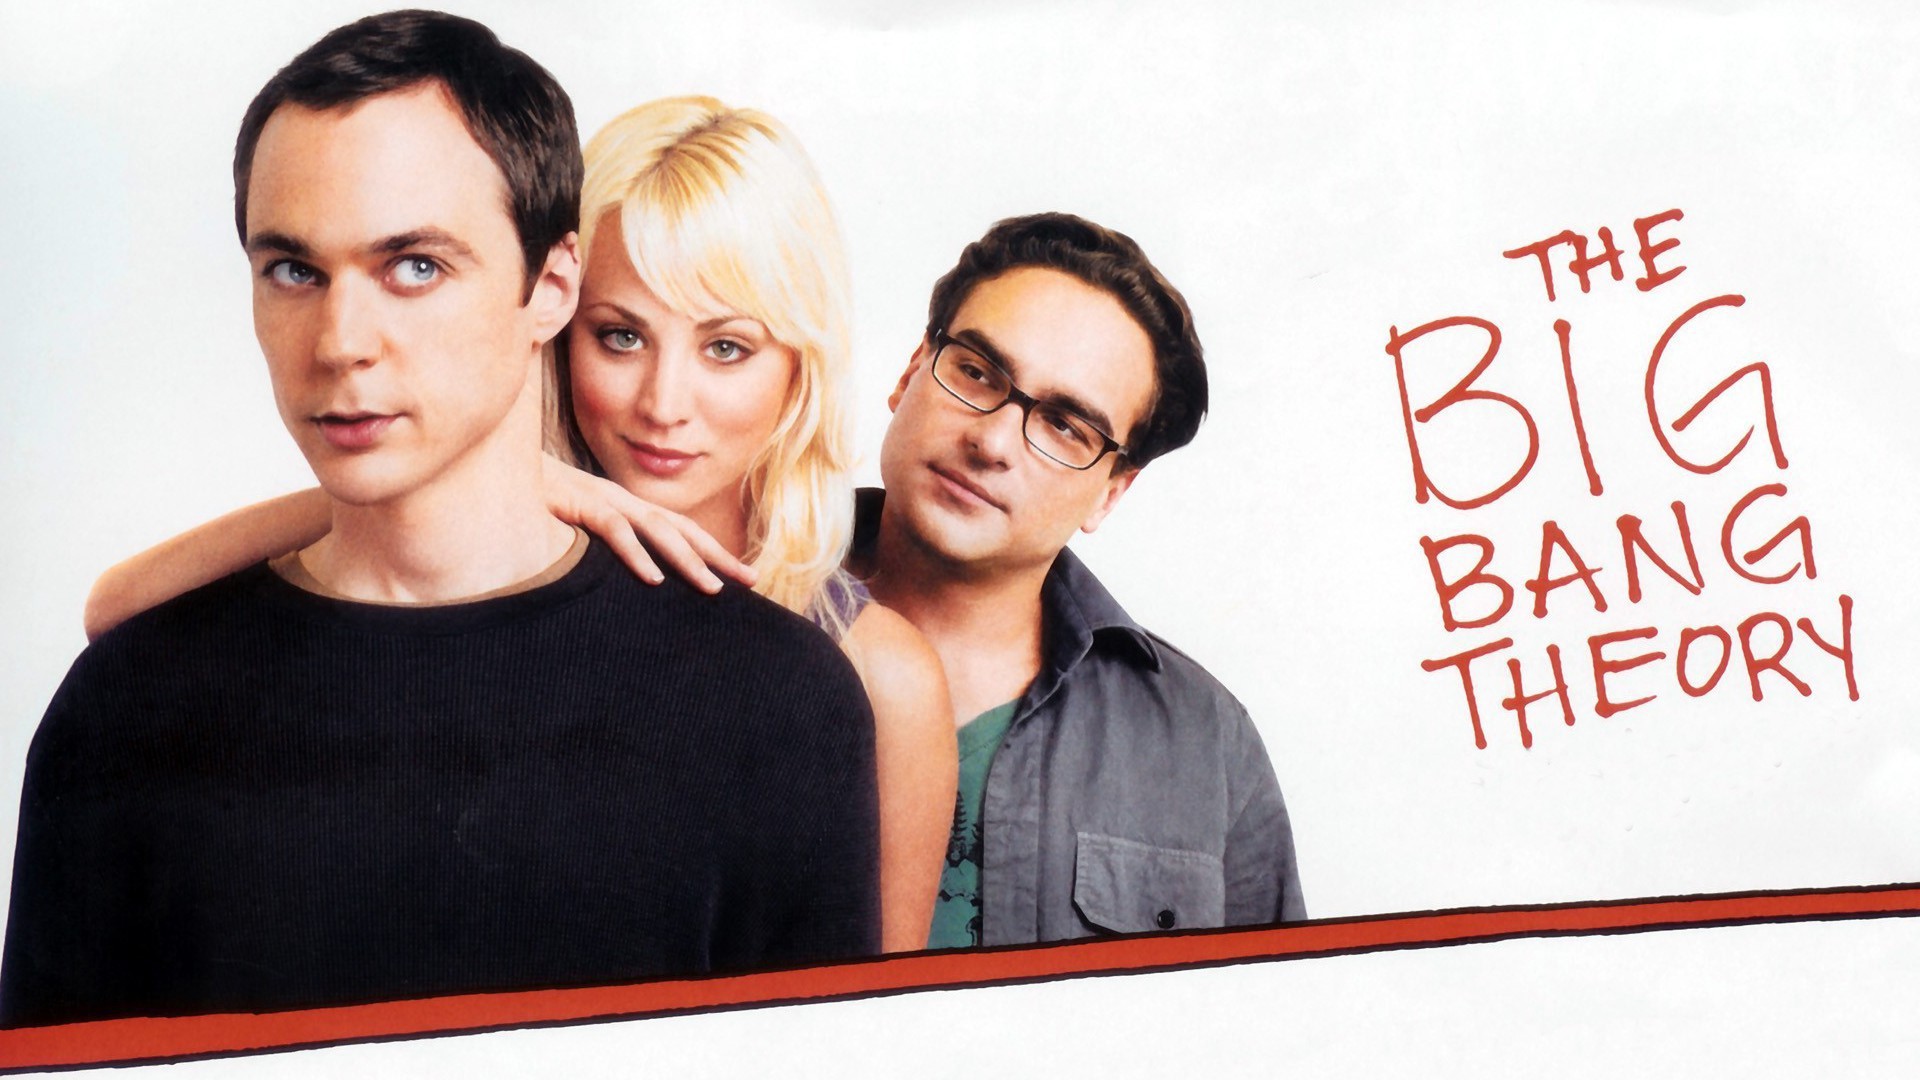 The Big Bang Theory Wallpaper Hd Free Desktop Wallpapers - Big Bang Theory Dvd Cover - HD Wallpaper 